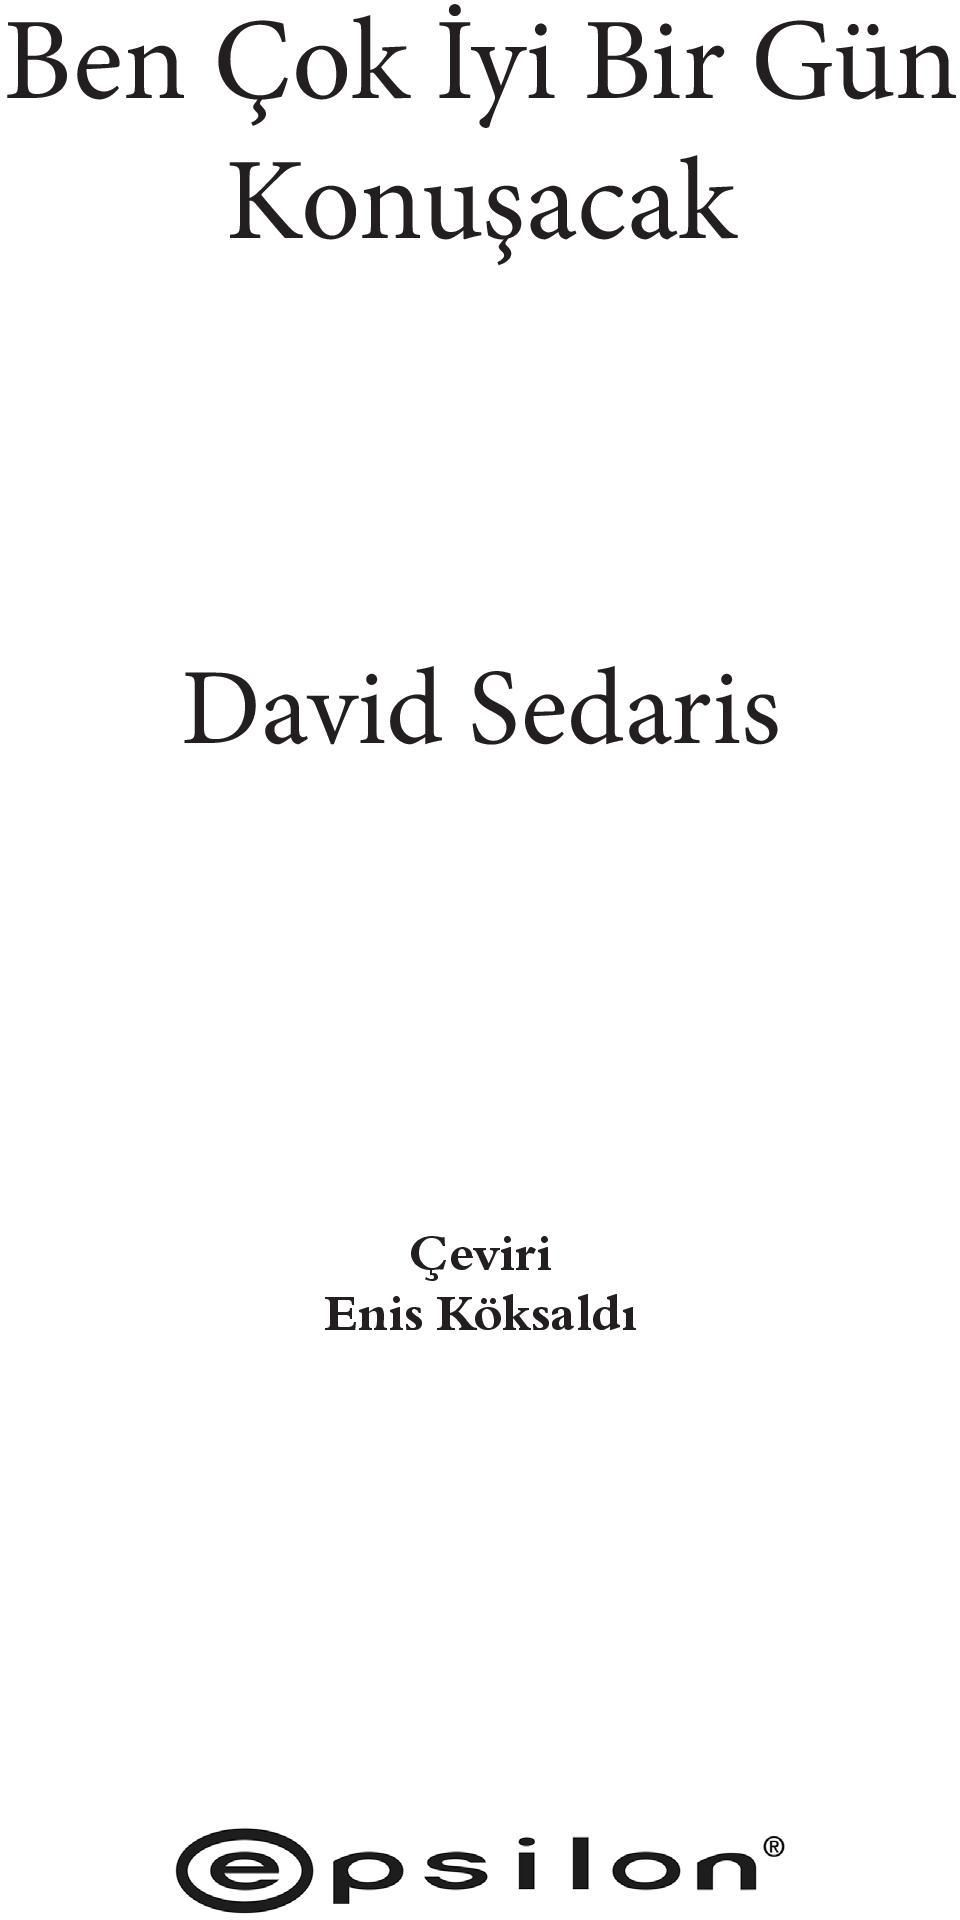 David Sedaris